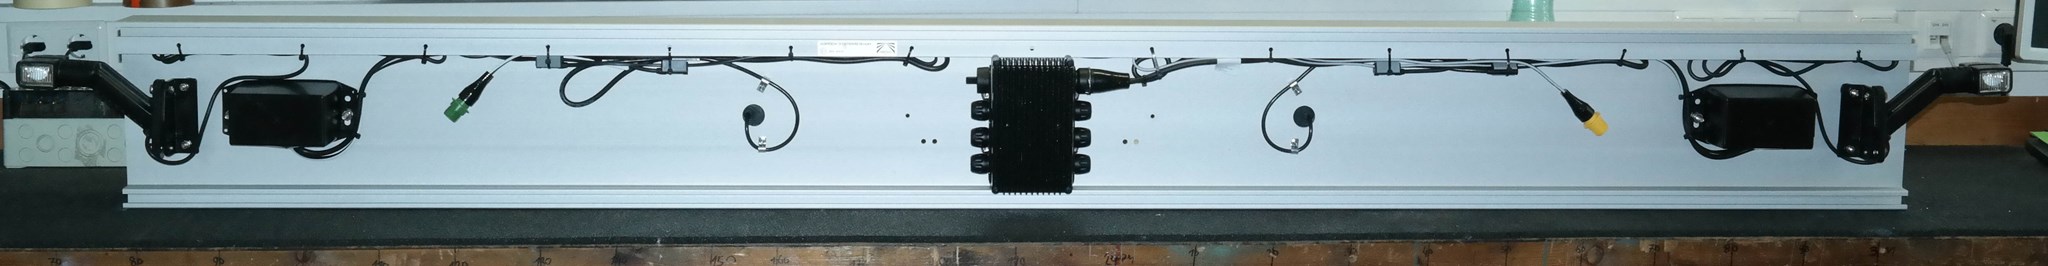 Picture of 97-1198-007C Aspöck ALU Unterfahrschutz eloxiert Europoint III Voll LED, Superpoint IV